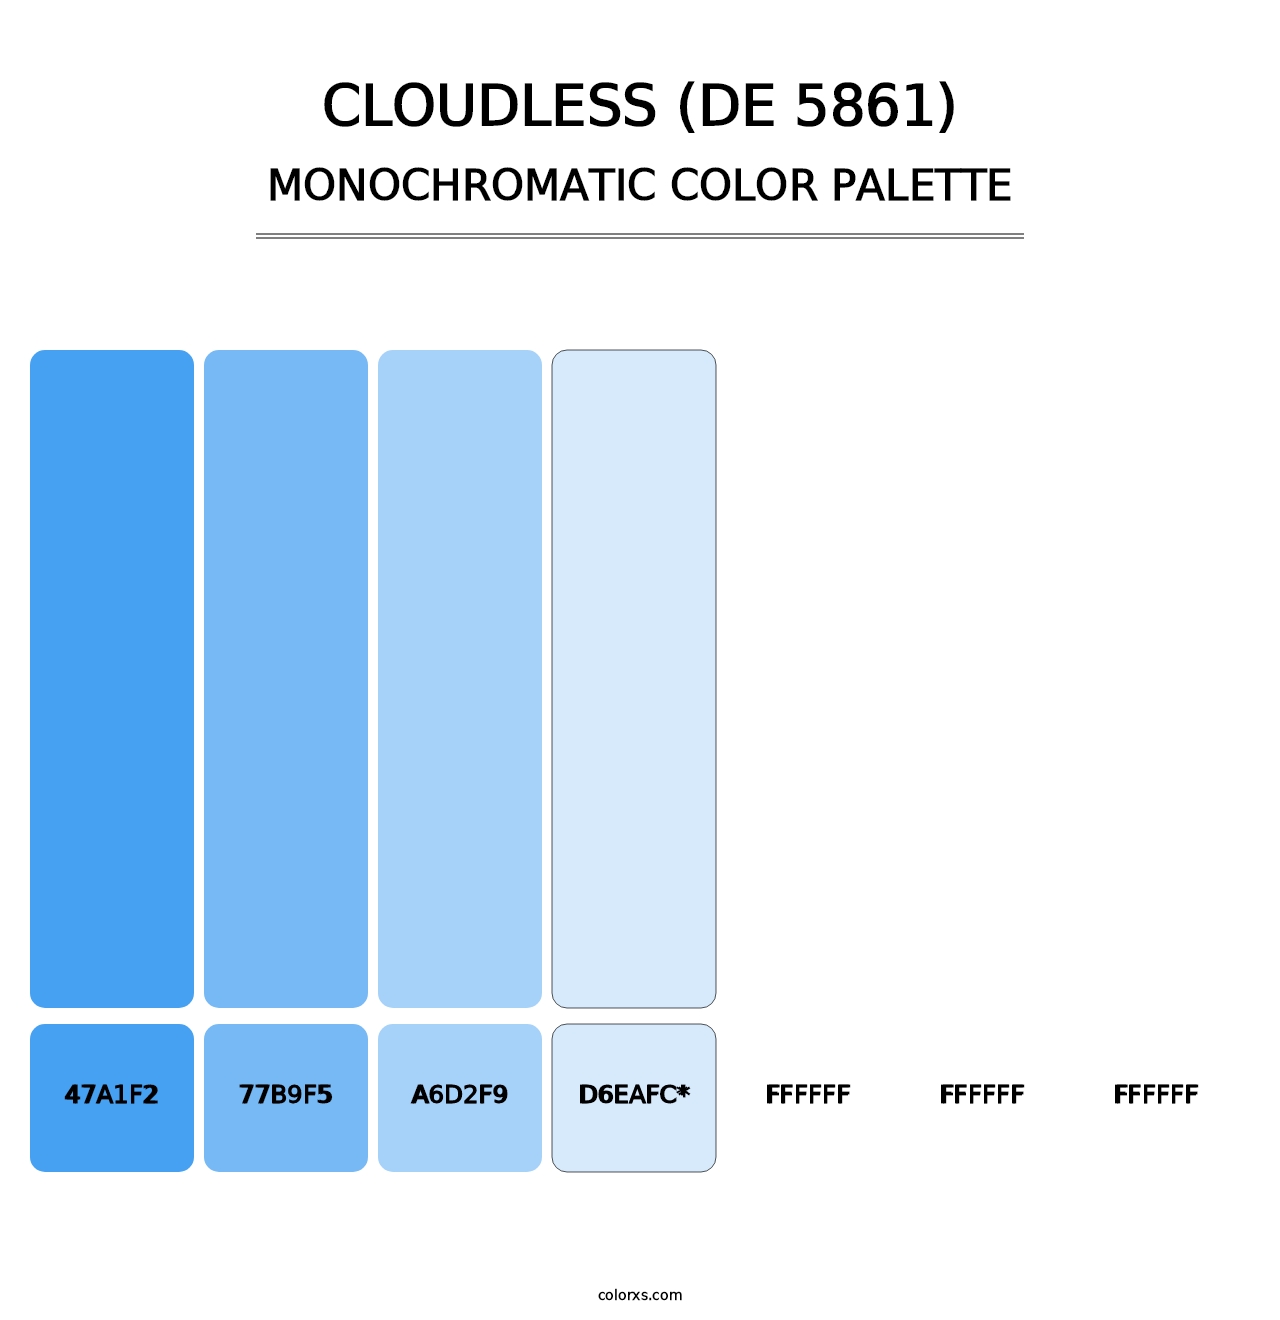 Cloudless (DE 5861) - Monochromatic Color Palette